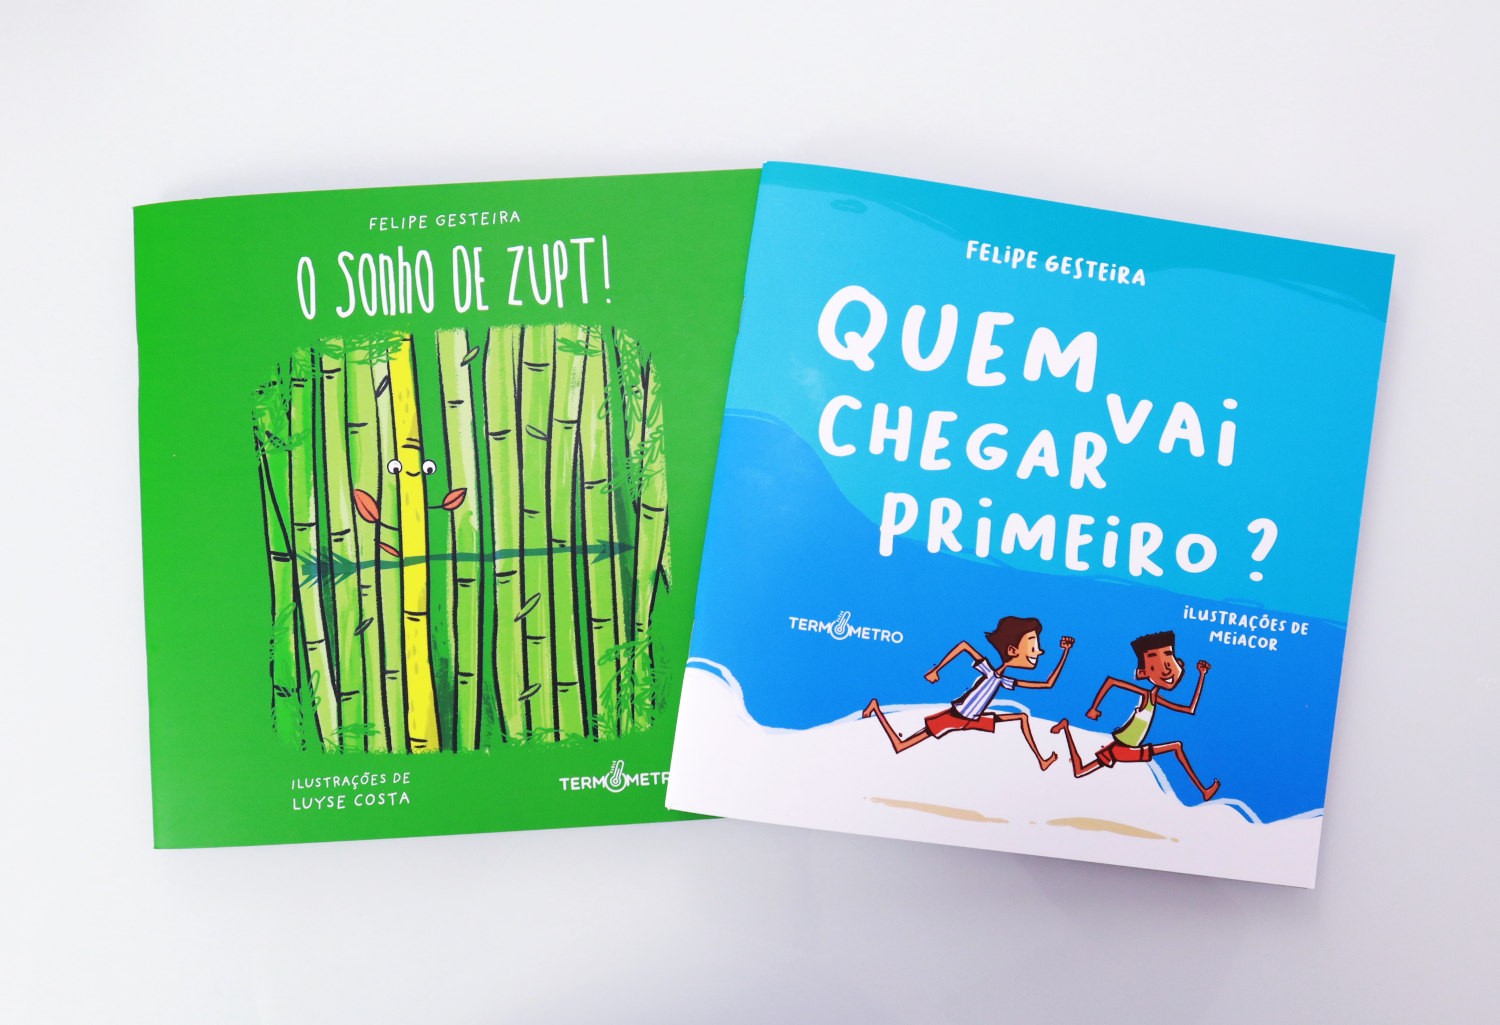 Escritor paraibano lança livros infantis abordando educação antirracista e defesa dos povos originários